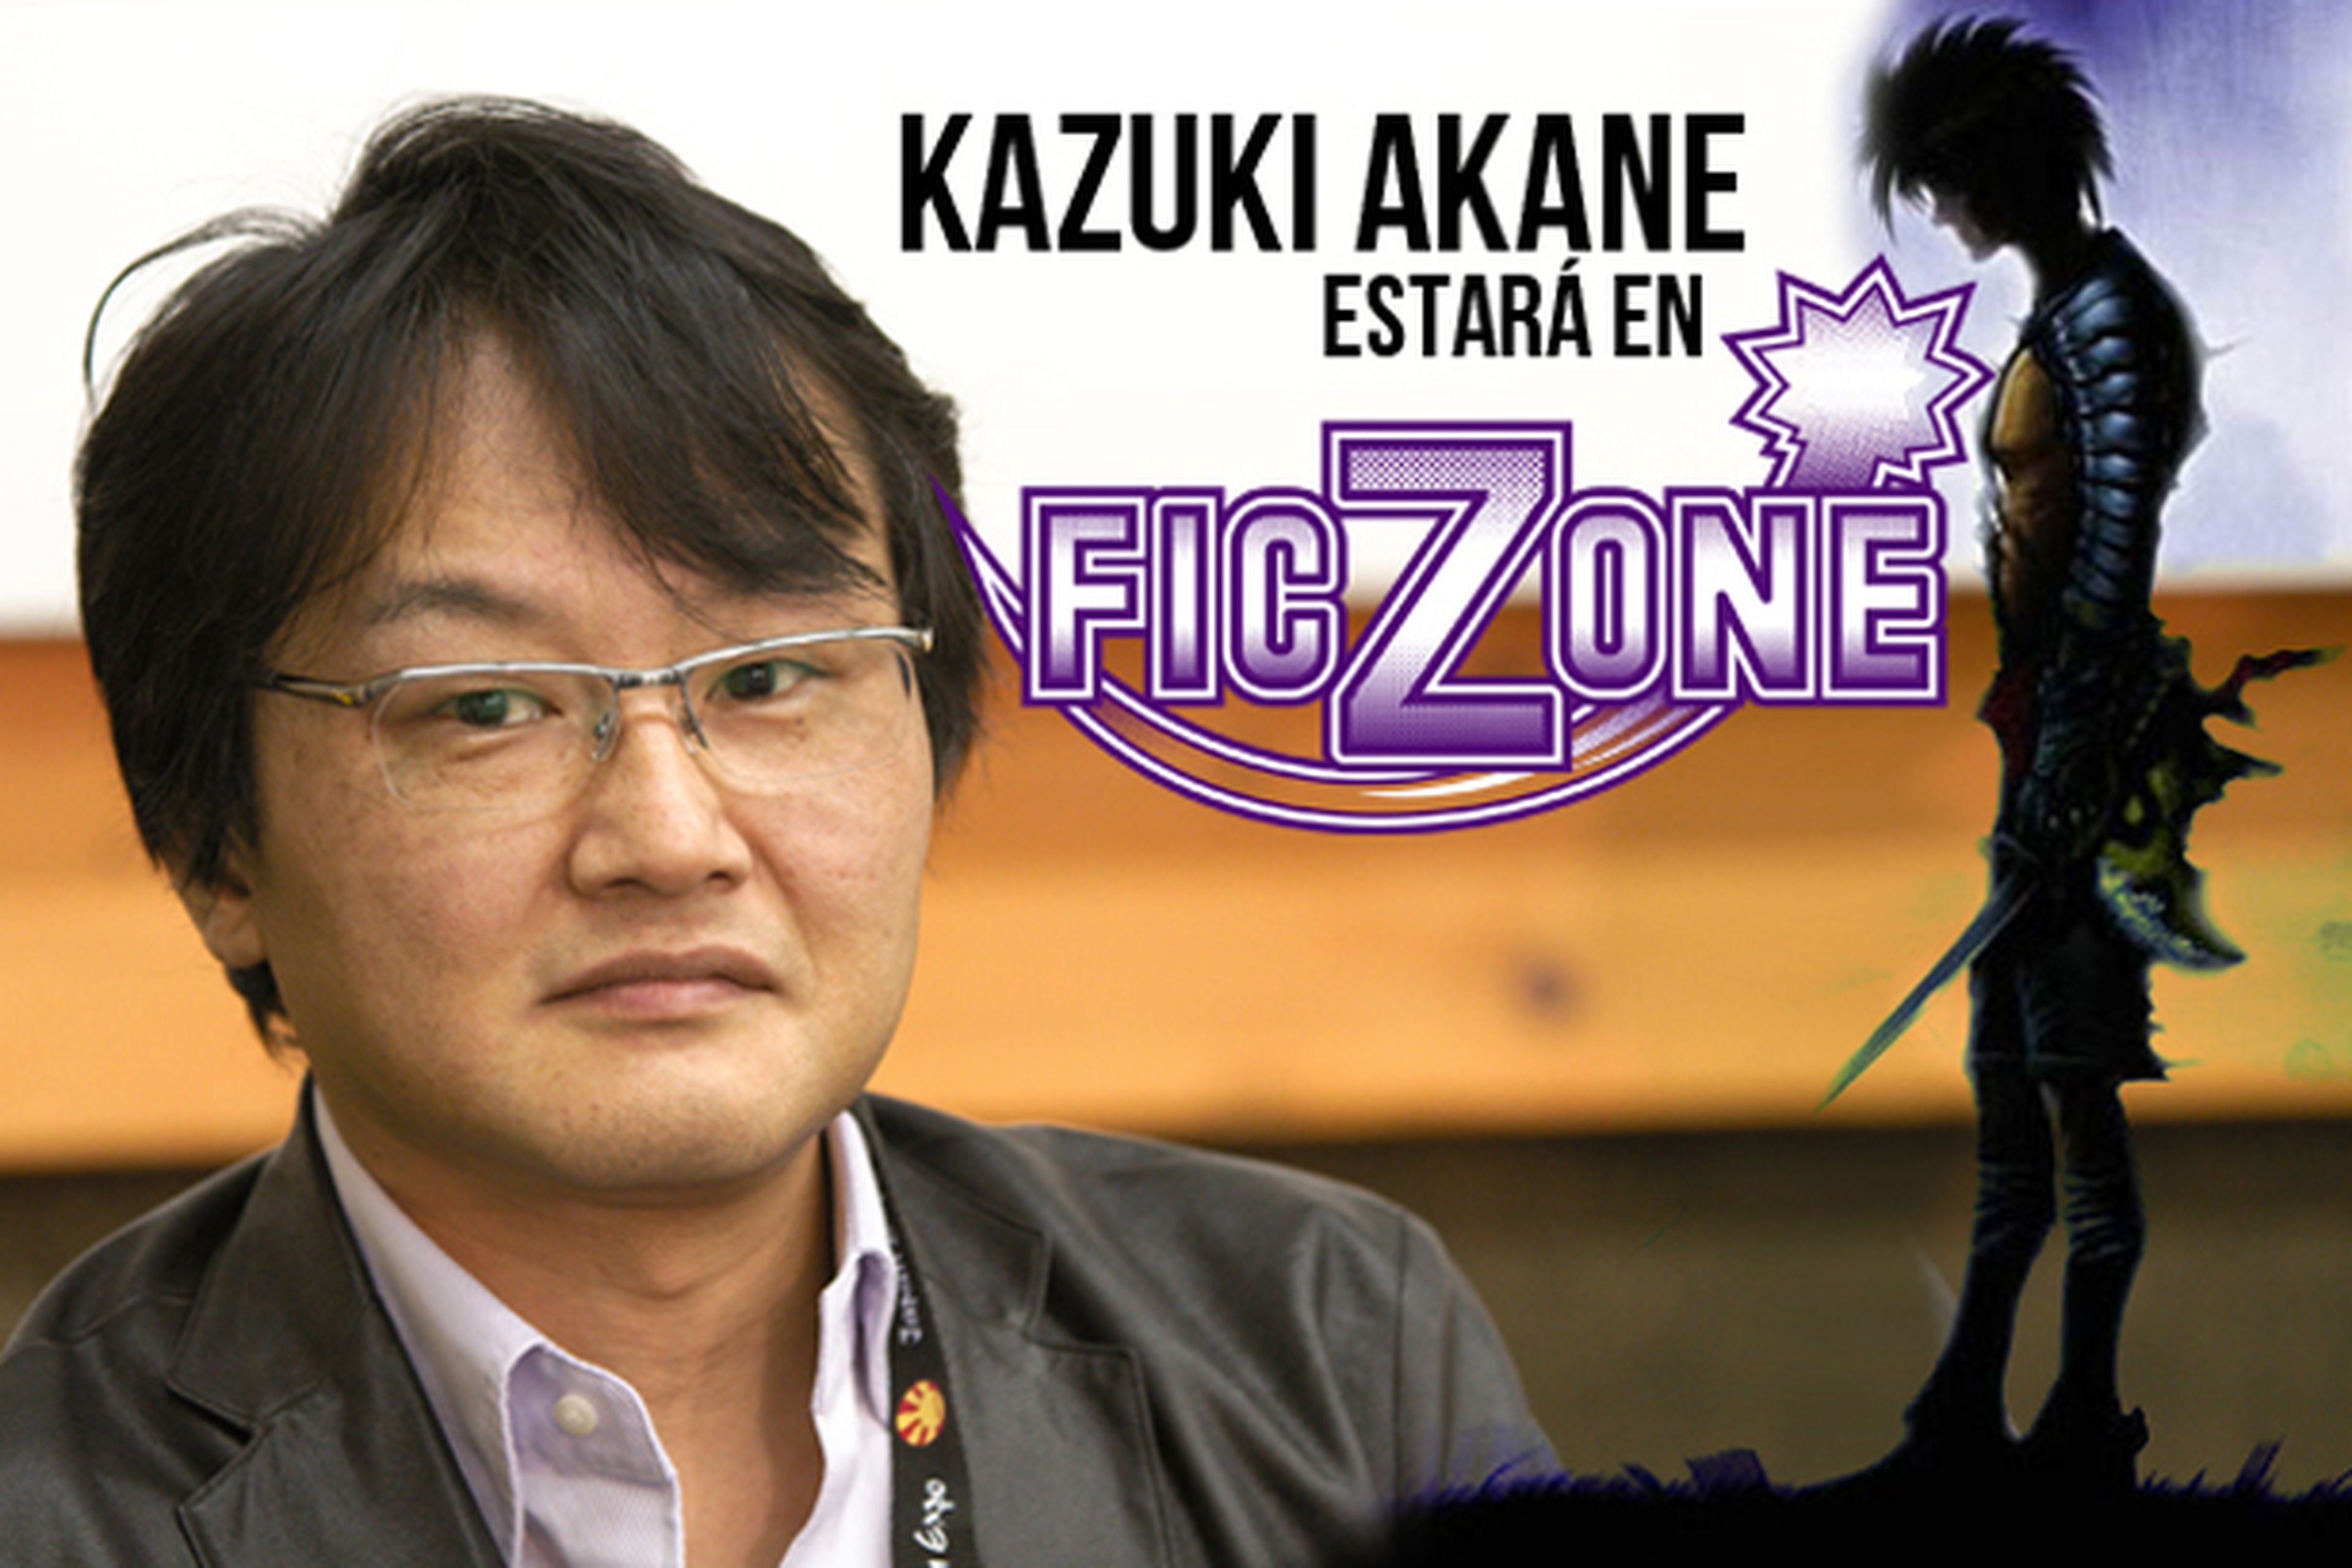 Kazuki Akane, invitado a FicZone 2013